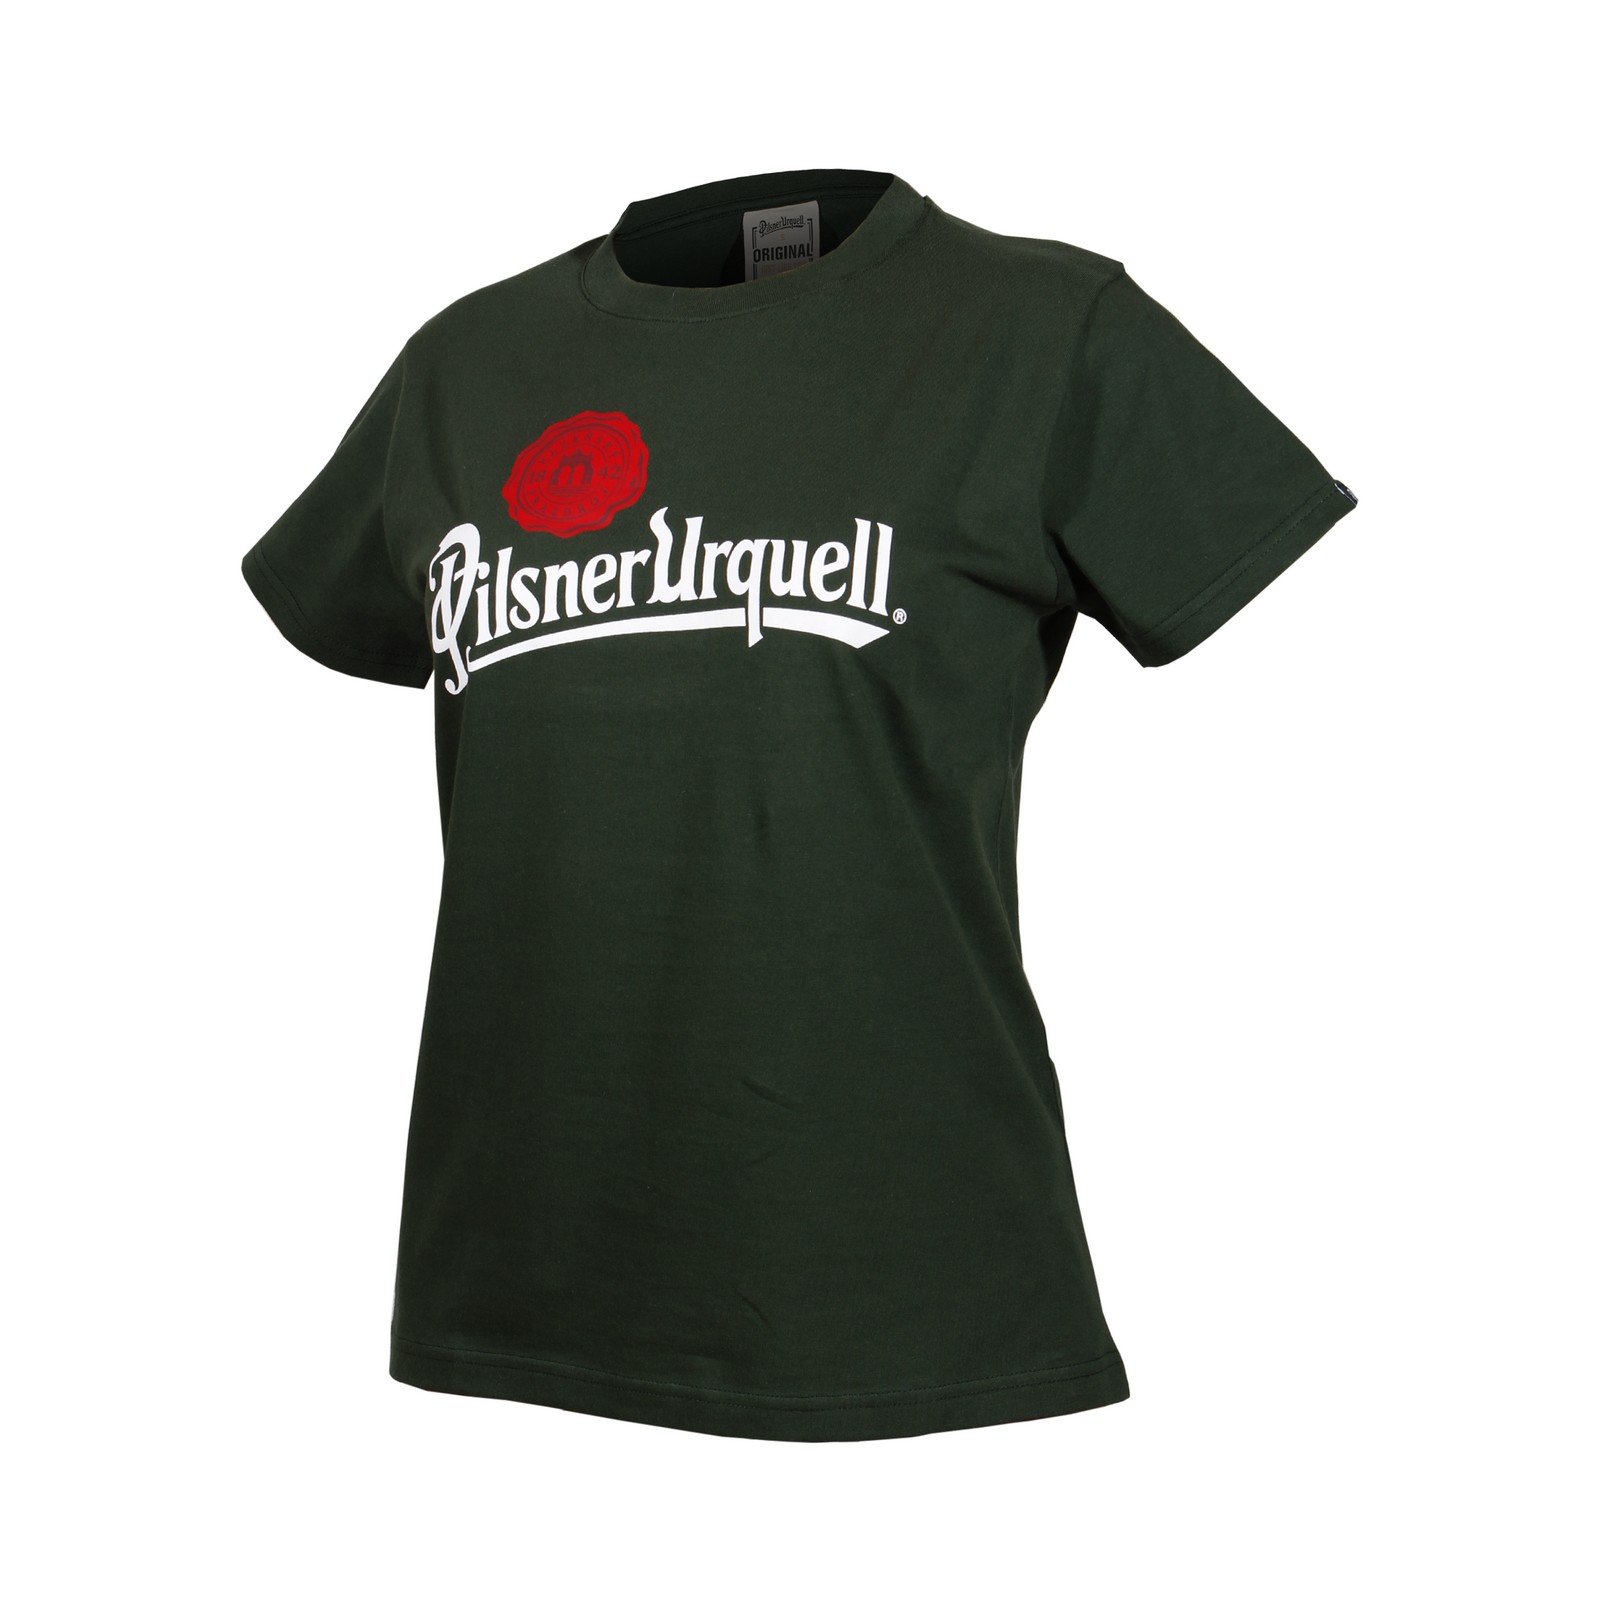 Women's t-shirt Pilsner Urquell logo with seal green